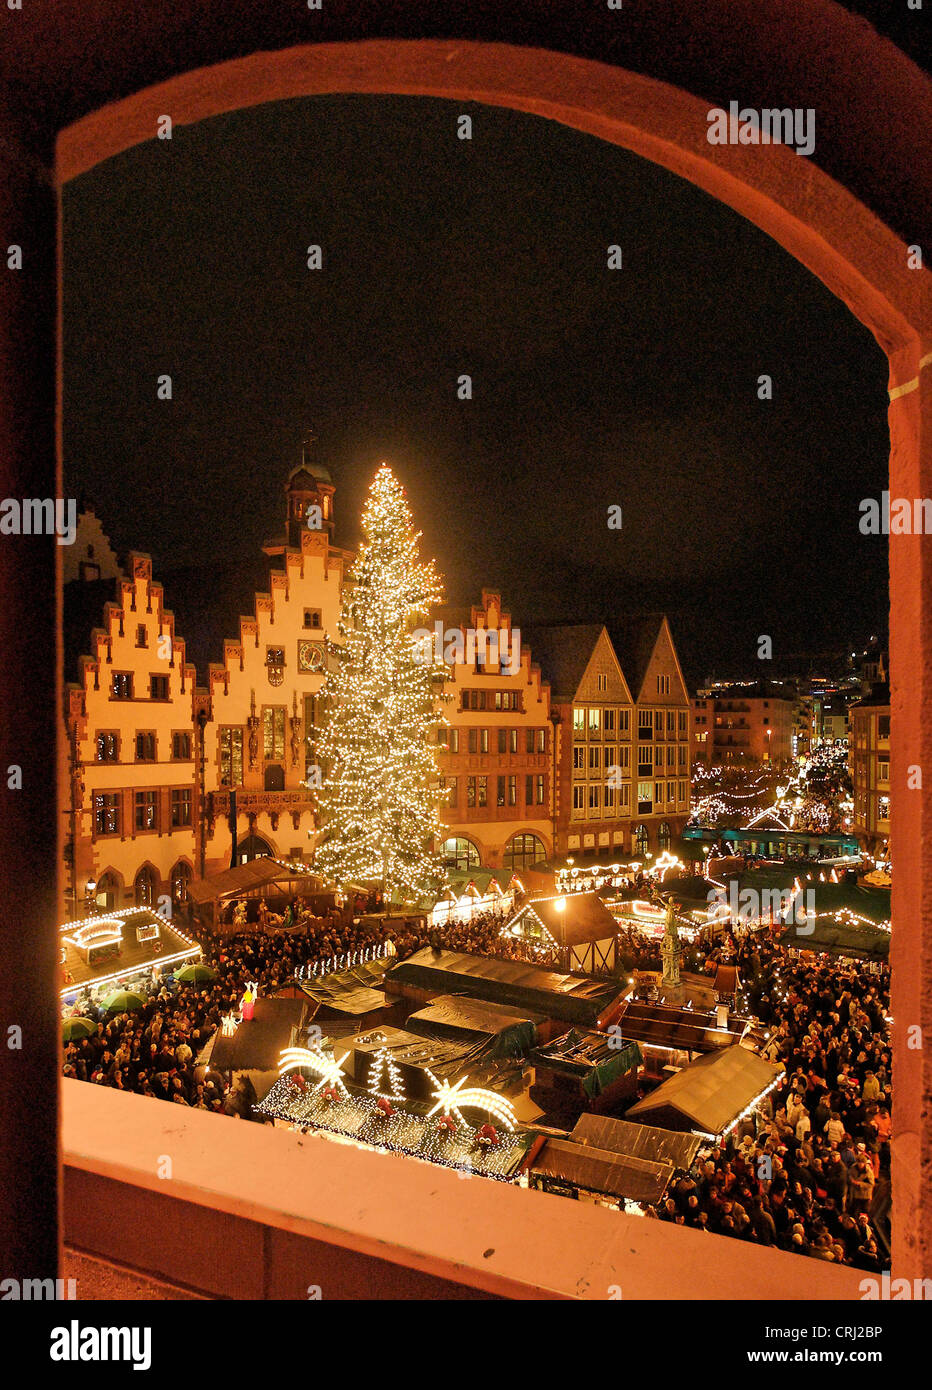 Christmas market, Germany, Frankfurt am Main Stock Photo